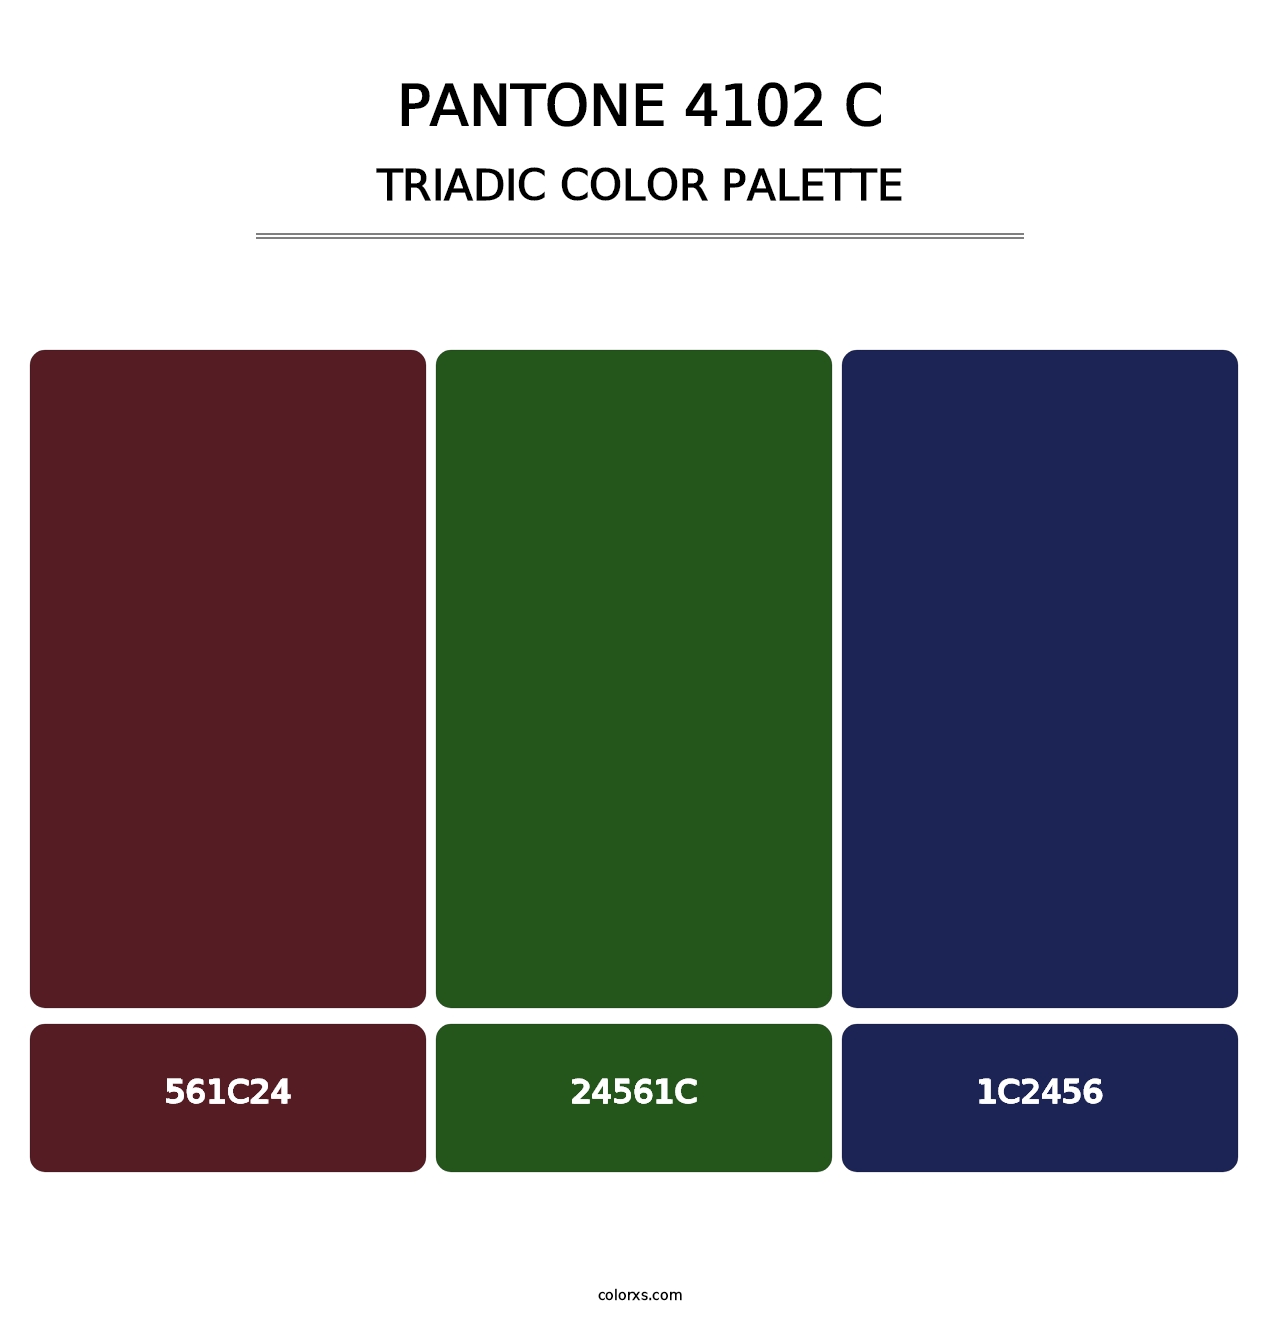 PANTONE 4102 C - Triadic Color Palette